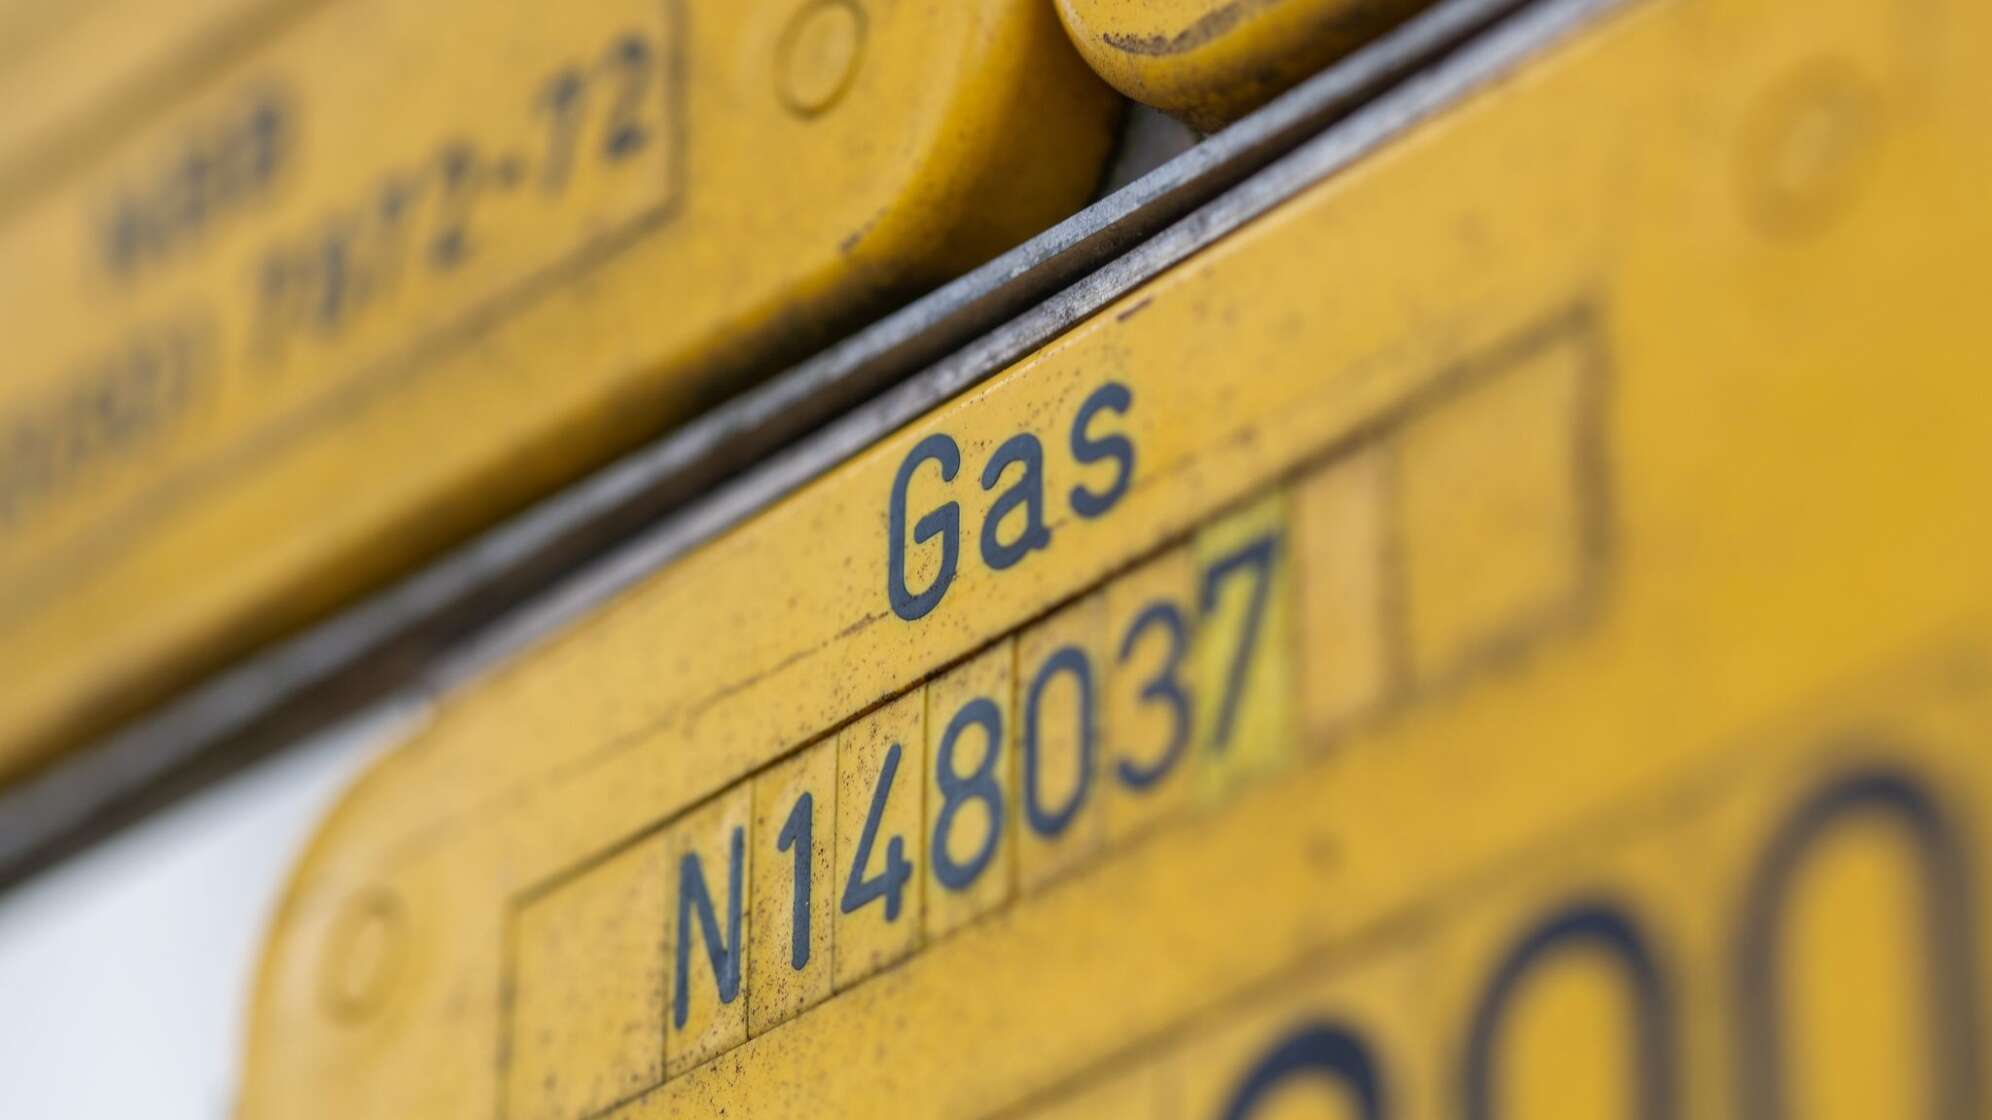 Gasleitung